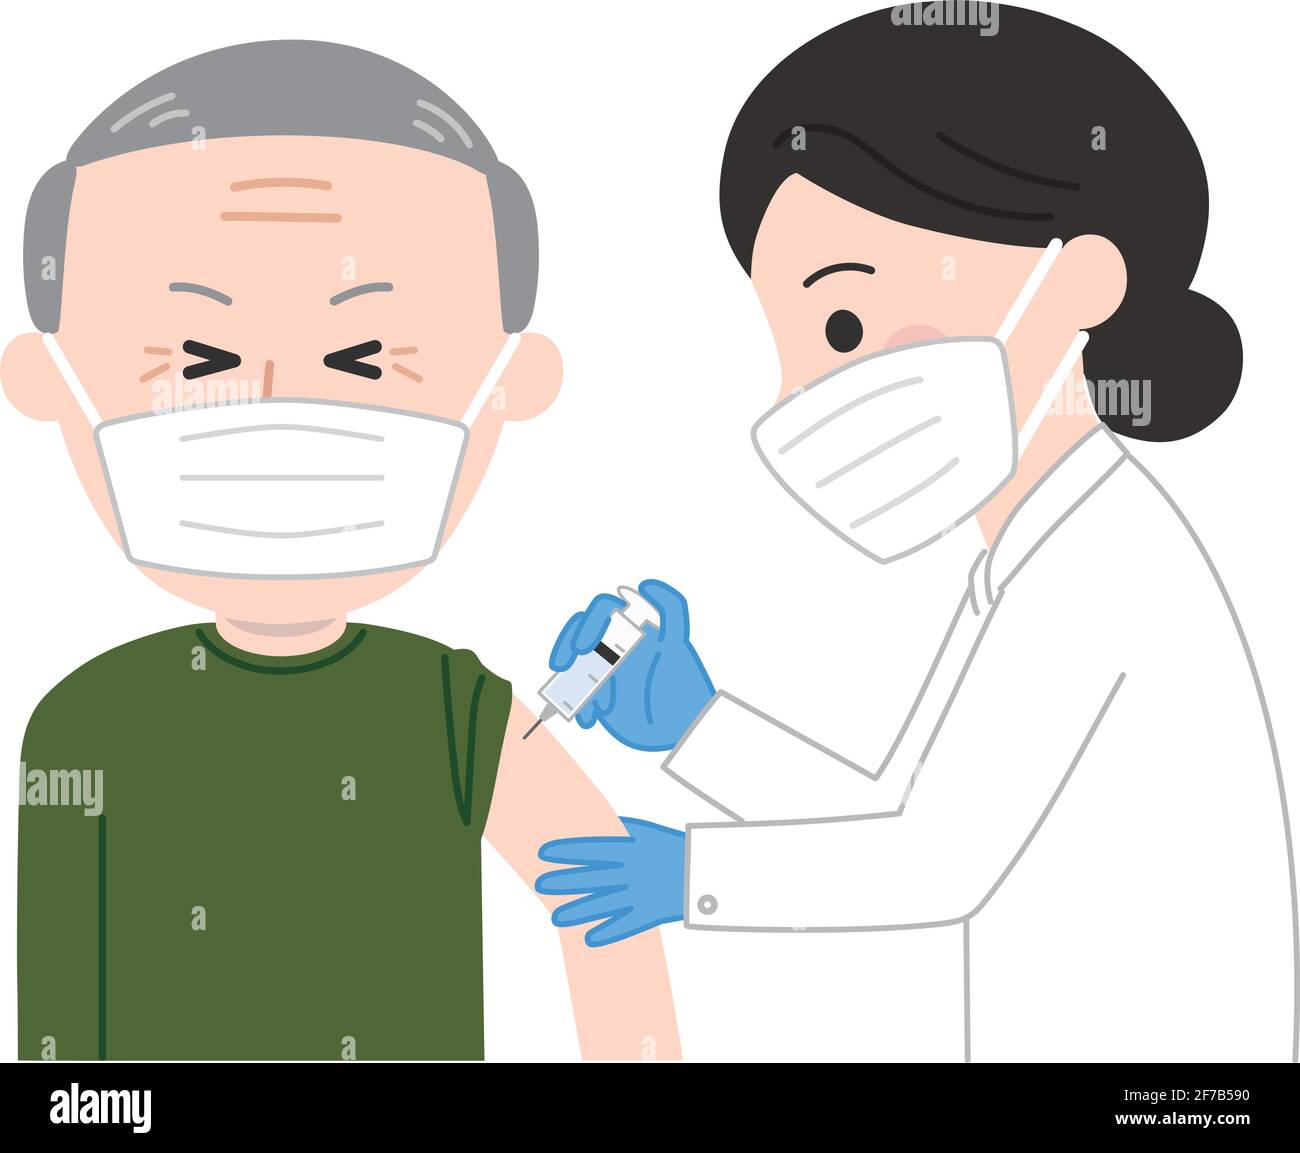 Un uomo anziano con una maschera medica del viso sente un pizzico leggero ricevere una vaccinazione. Illustrazione vettoriale isolata su sfondo bianco. Illustrazione Vettoriale